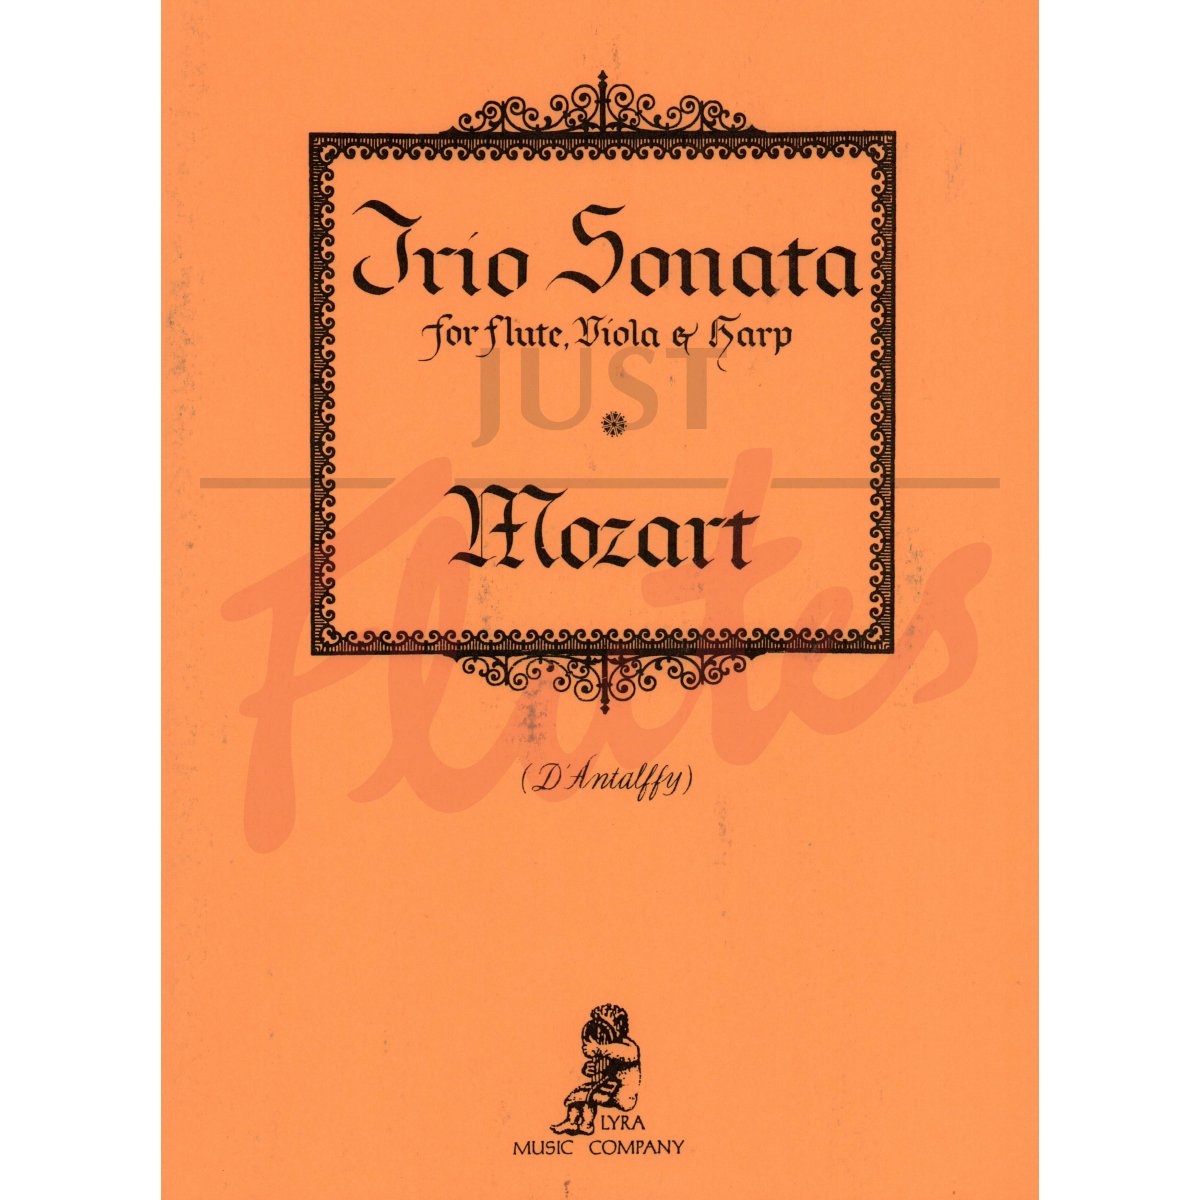 Trio Sonata arranged for Flute, Viola and Harp